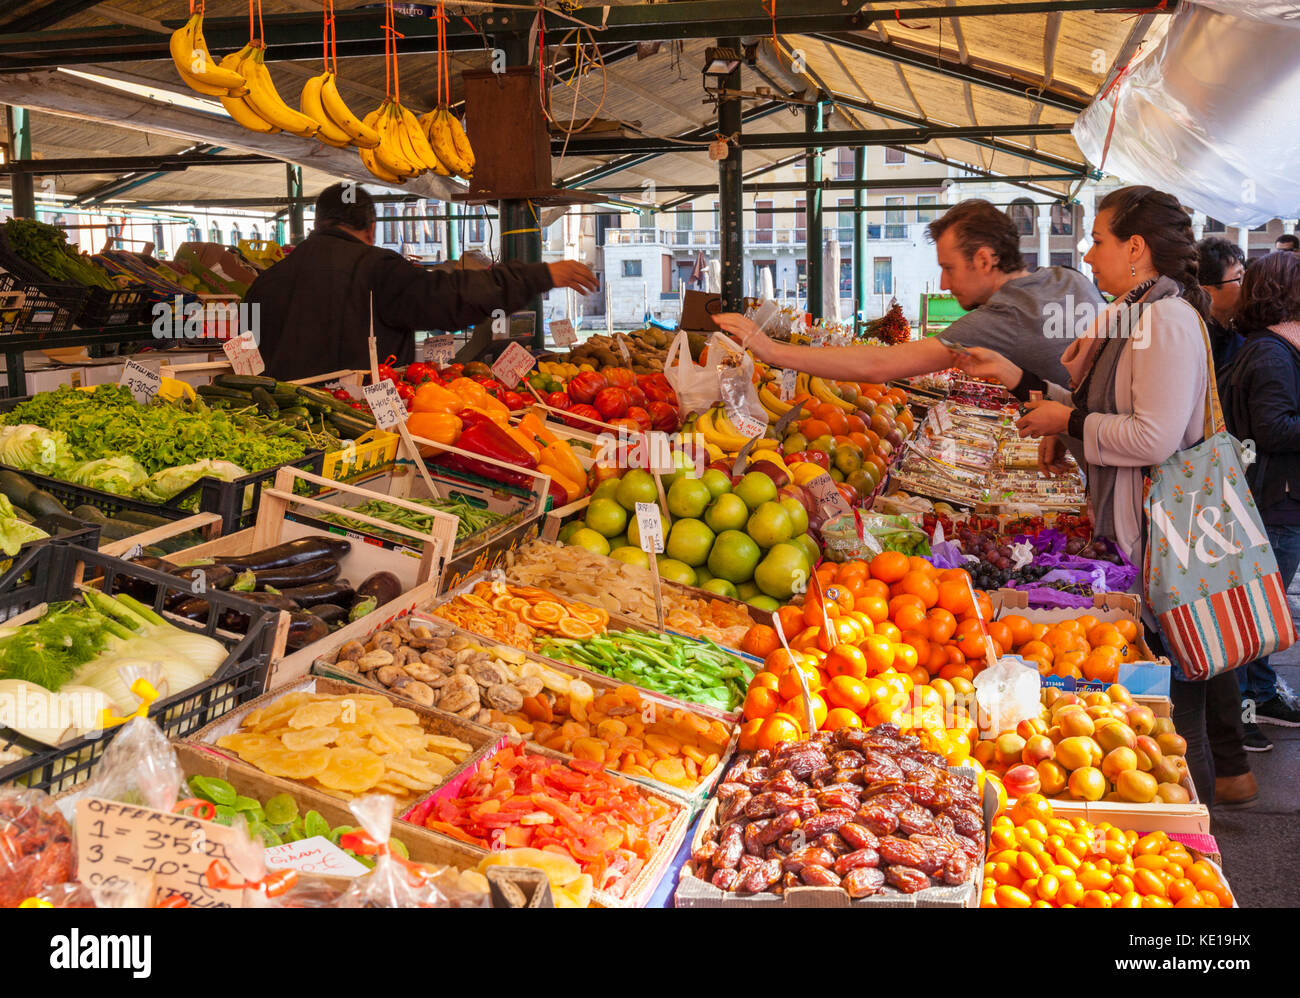 Fruits et légumes les gens achètent des fruits et des légumes frais dans les étals du marché vendant des produits frais marché du Rialto Venise Italie UE Europe Banque D'Images